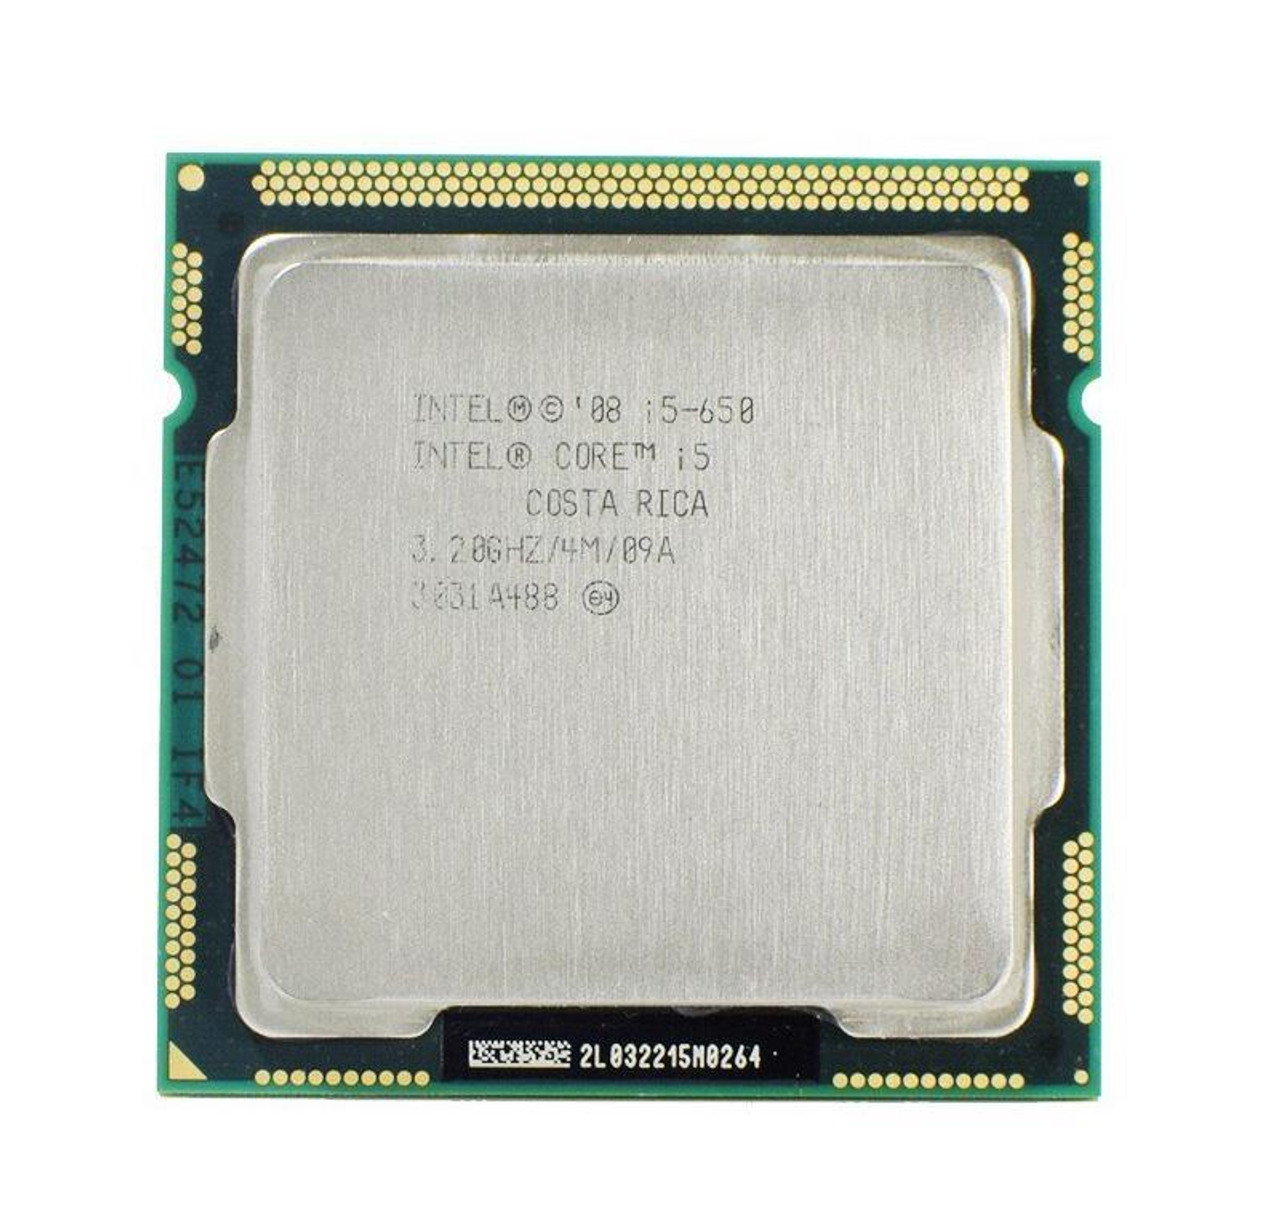 Dell 3.20GHz 2.50GT/s DMI 4MB L3 Cache Socket LGA1156 Intel Core i5-650 Dual-Core Desktop Processor Upgrade